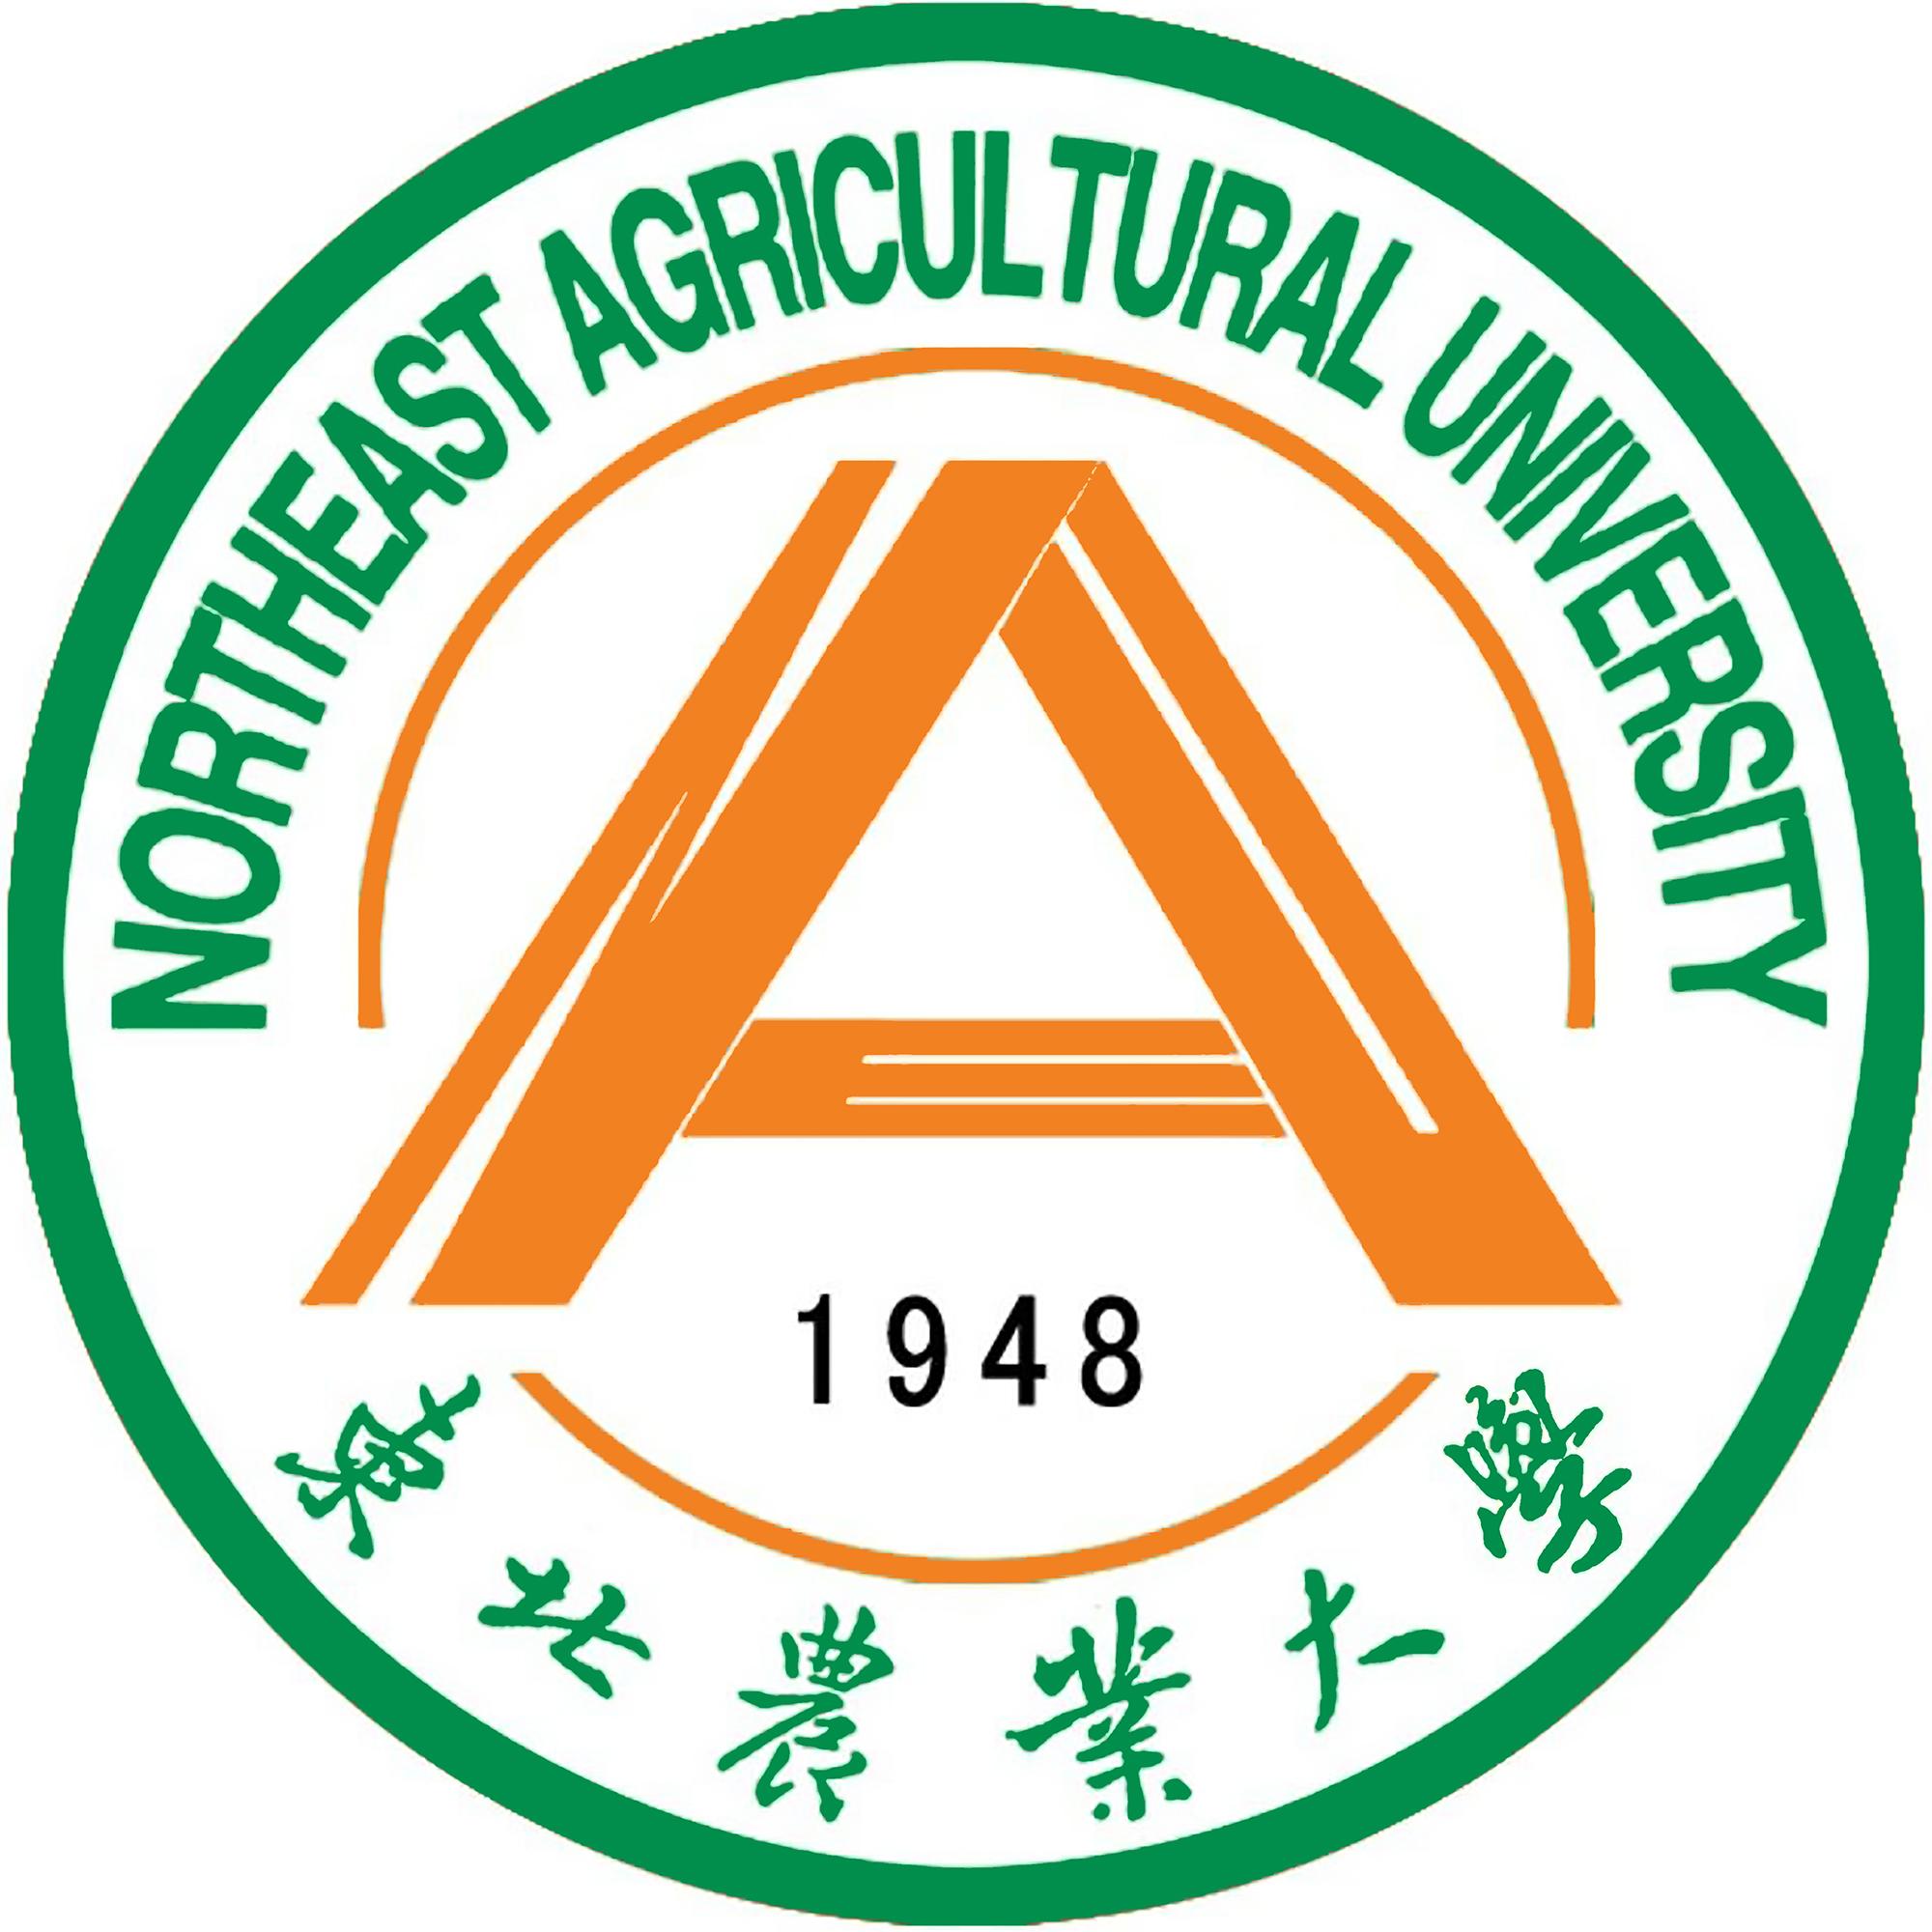 东北林业大学校徽含义图片